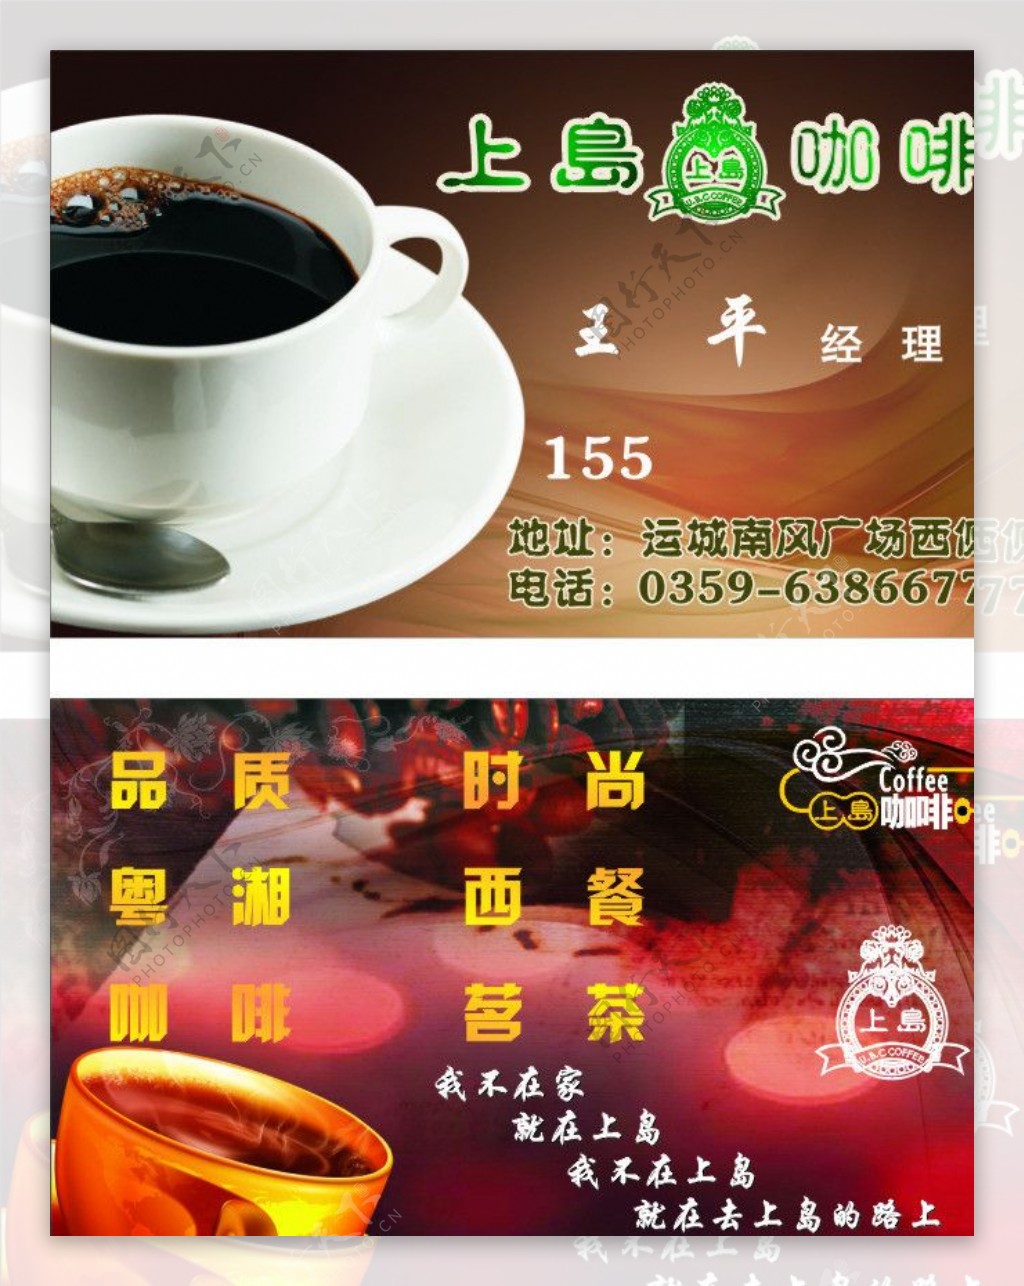 上岛咖啡名片图片